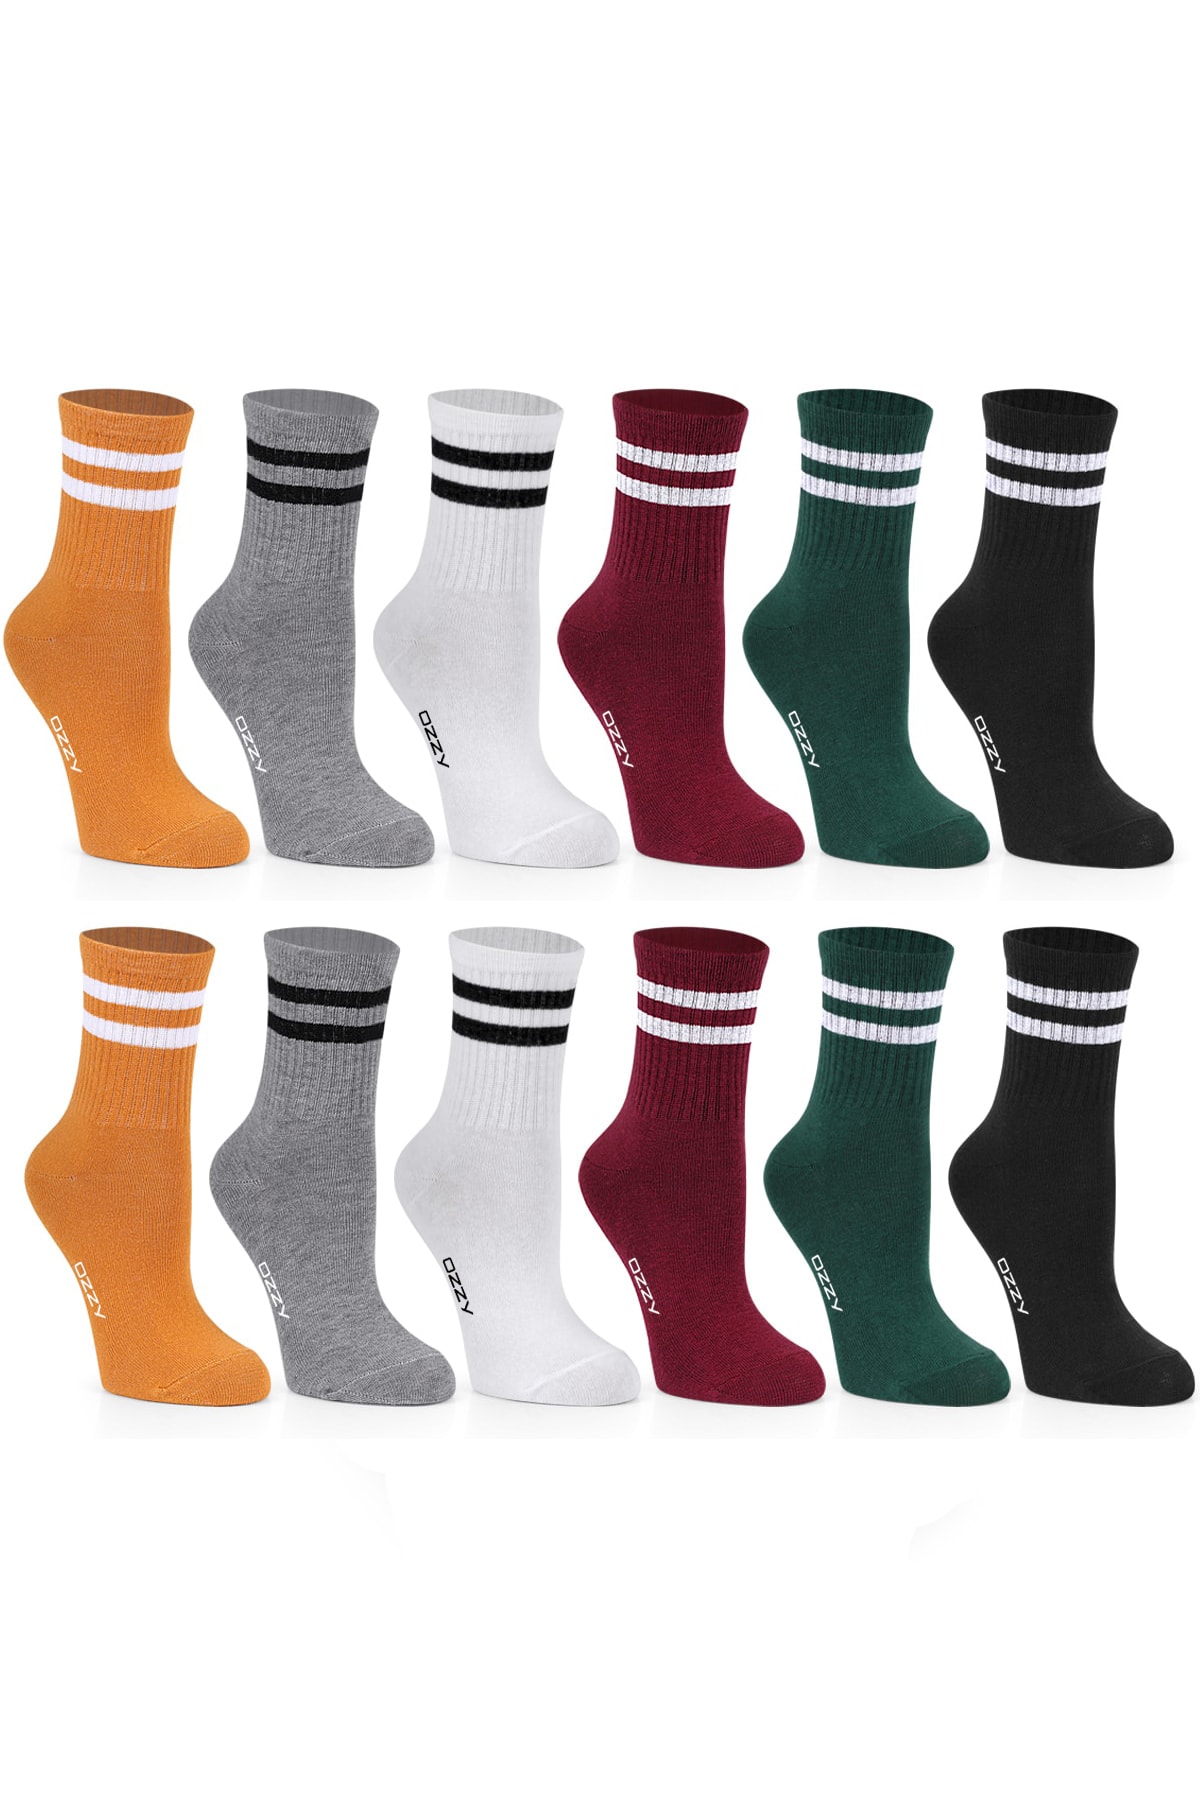 Ozzy Socks Kadın 12' Li Karışık Renkli Çizgili Tenis Çorabı